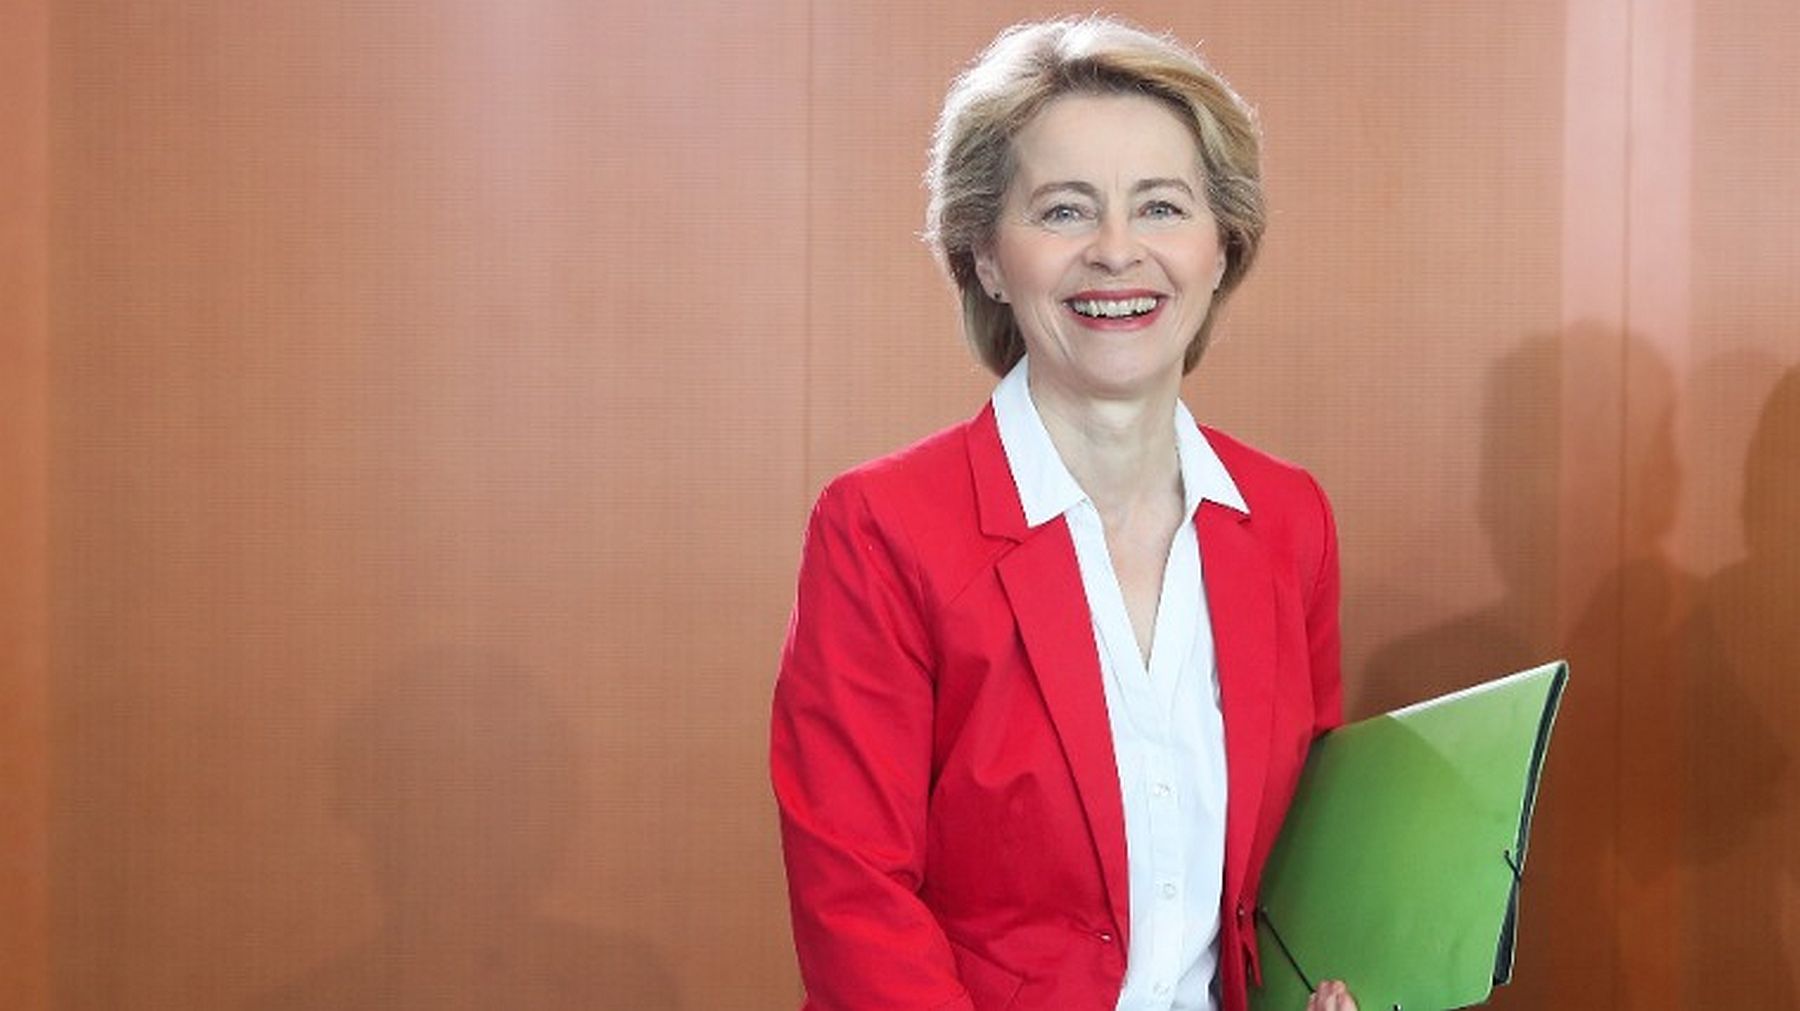 V4 győzelem Brüsszelben - Ursula von der Leyen lehet az Európai Bizottság új elnöke